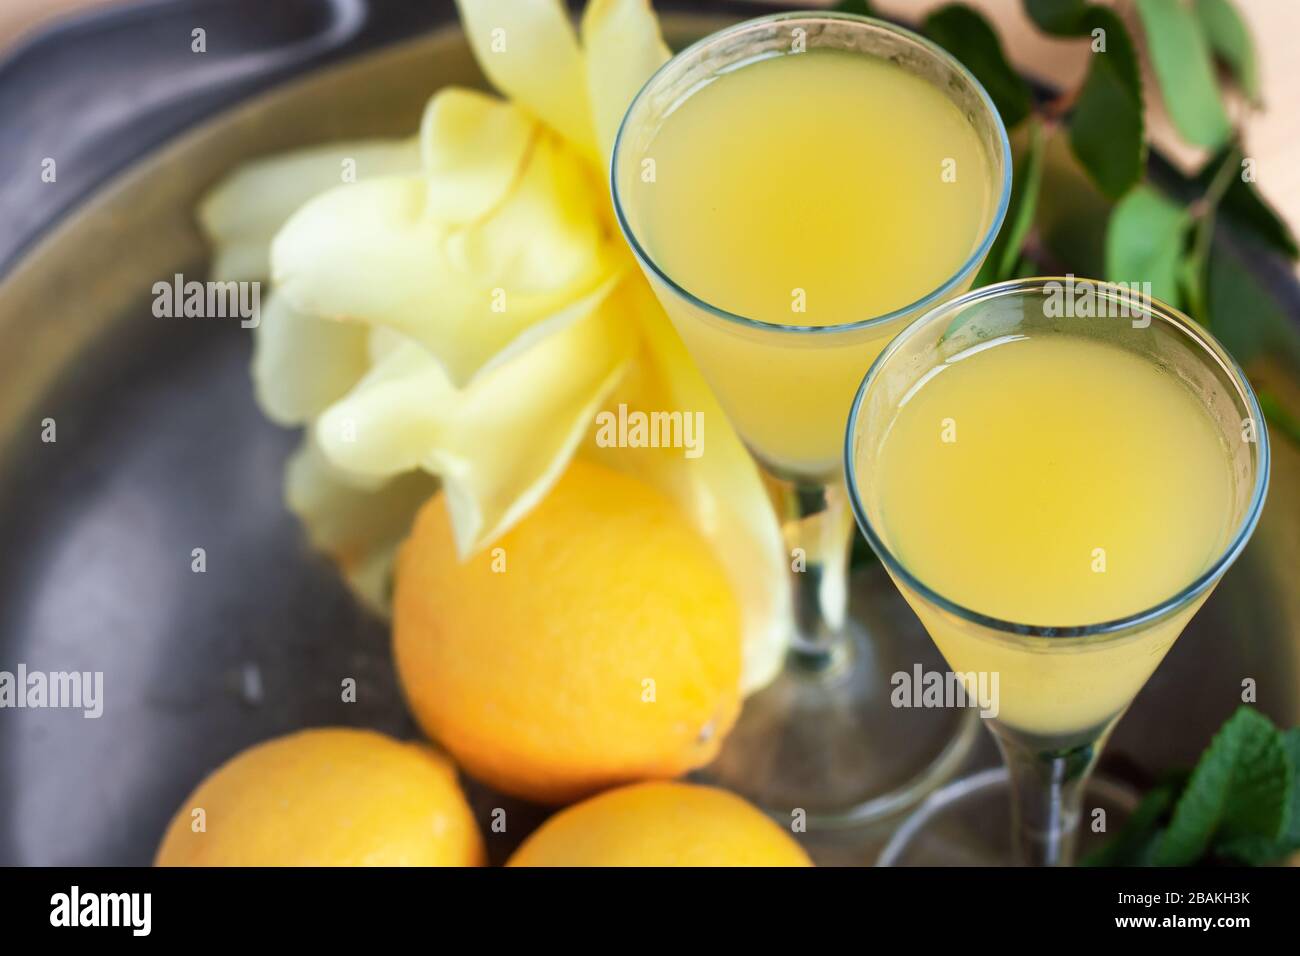 https://c8.alamy.com/comp/2BAKH3K/limoncello-in-elegant-liquor-glasses-with-lemons-mint-and-yellow-rose-on-steel-plate-sicilian-lemon-liquor-2BAKH3K.jpg